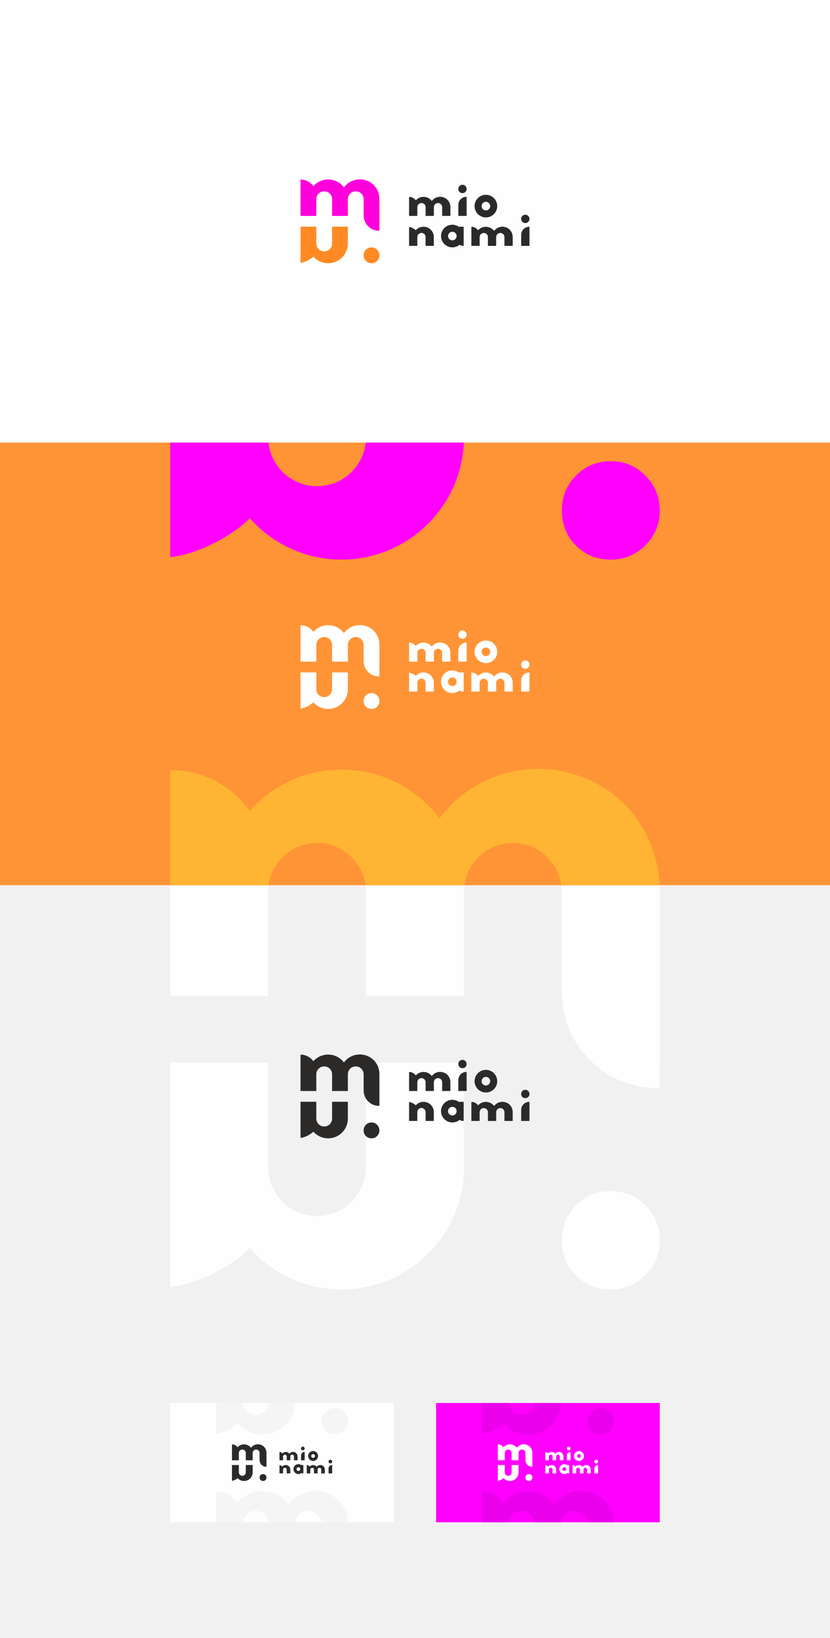 Знак состоит из букв, которые образуют вместе швейную машину - атрибут производителя. "n" перевернуто, как отражение в зеркале. Мы примеряем новую одежду перед зеркалом.
"m" и "n"  в знаке образуют стежок, соединительный шов. - Необходимо разработать логотип для молодого бренда одежды MIONAMI